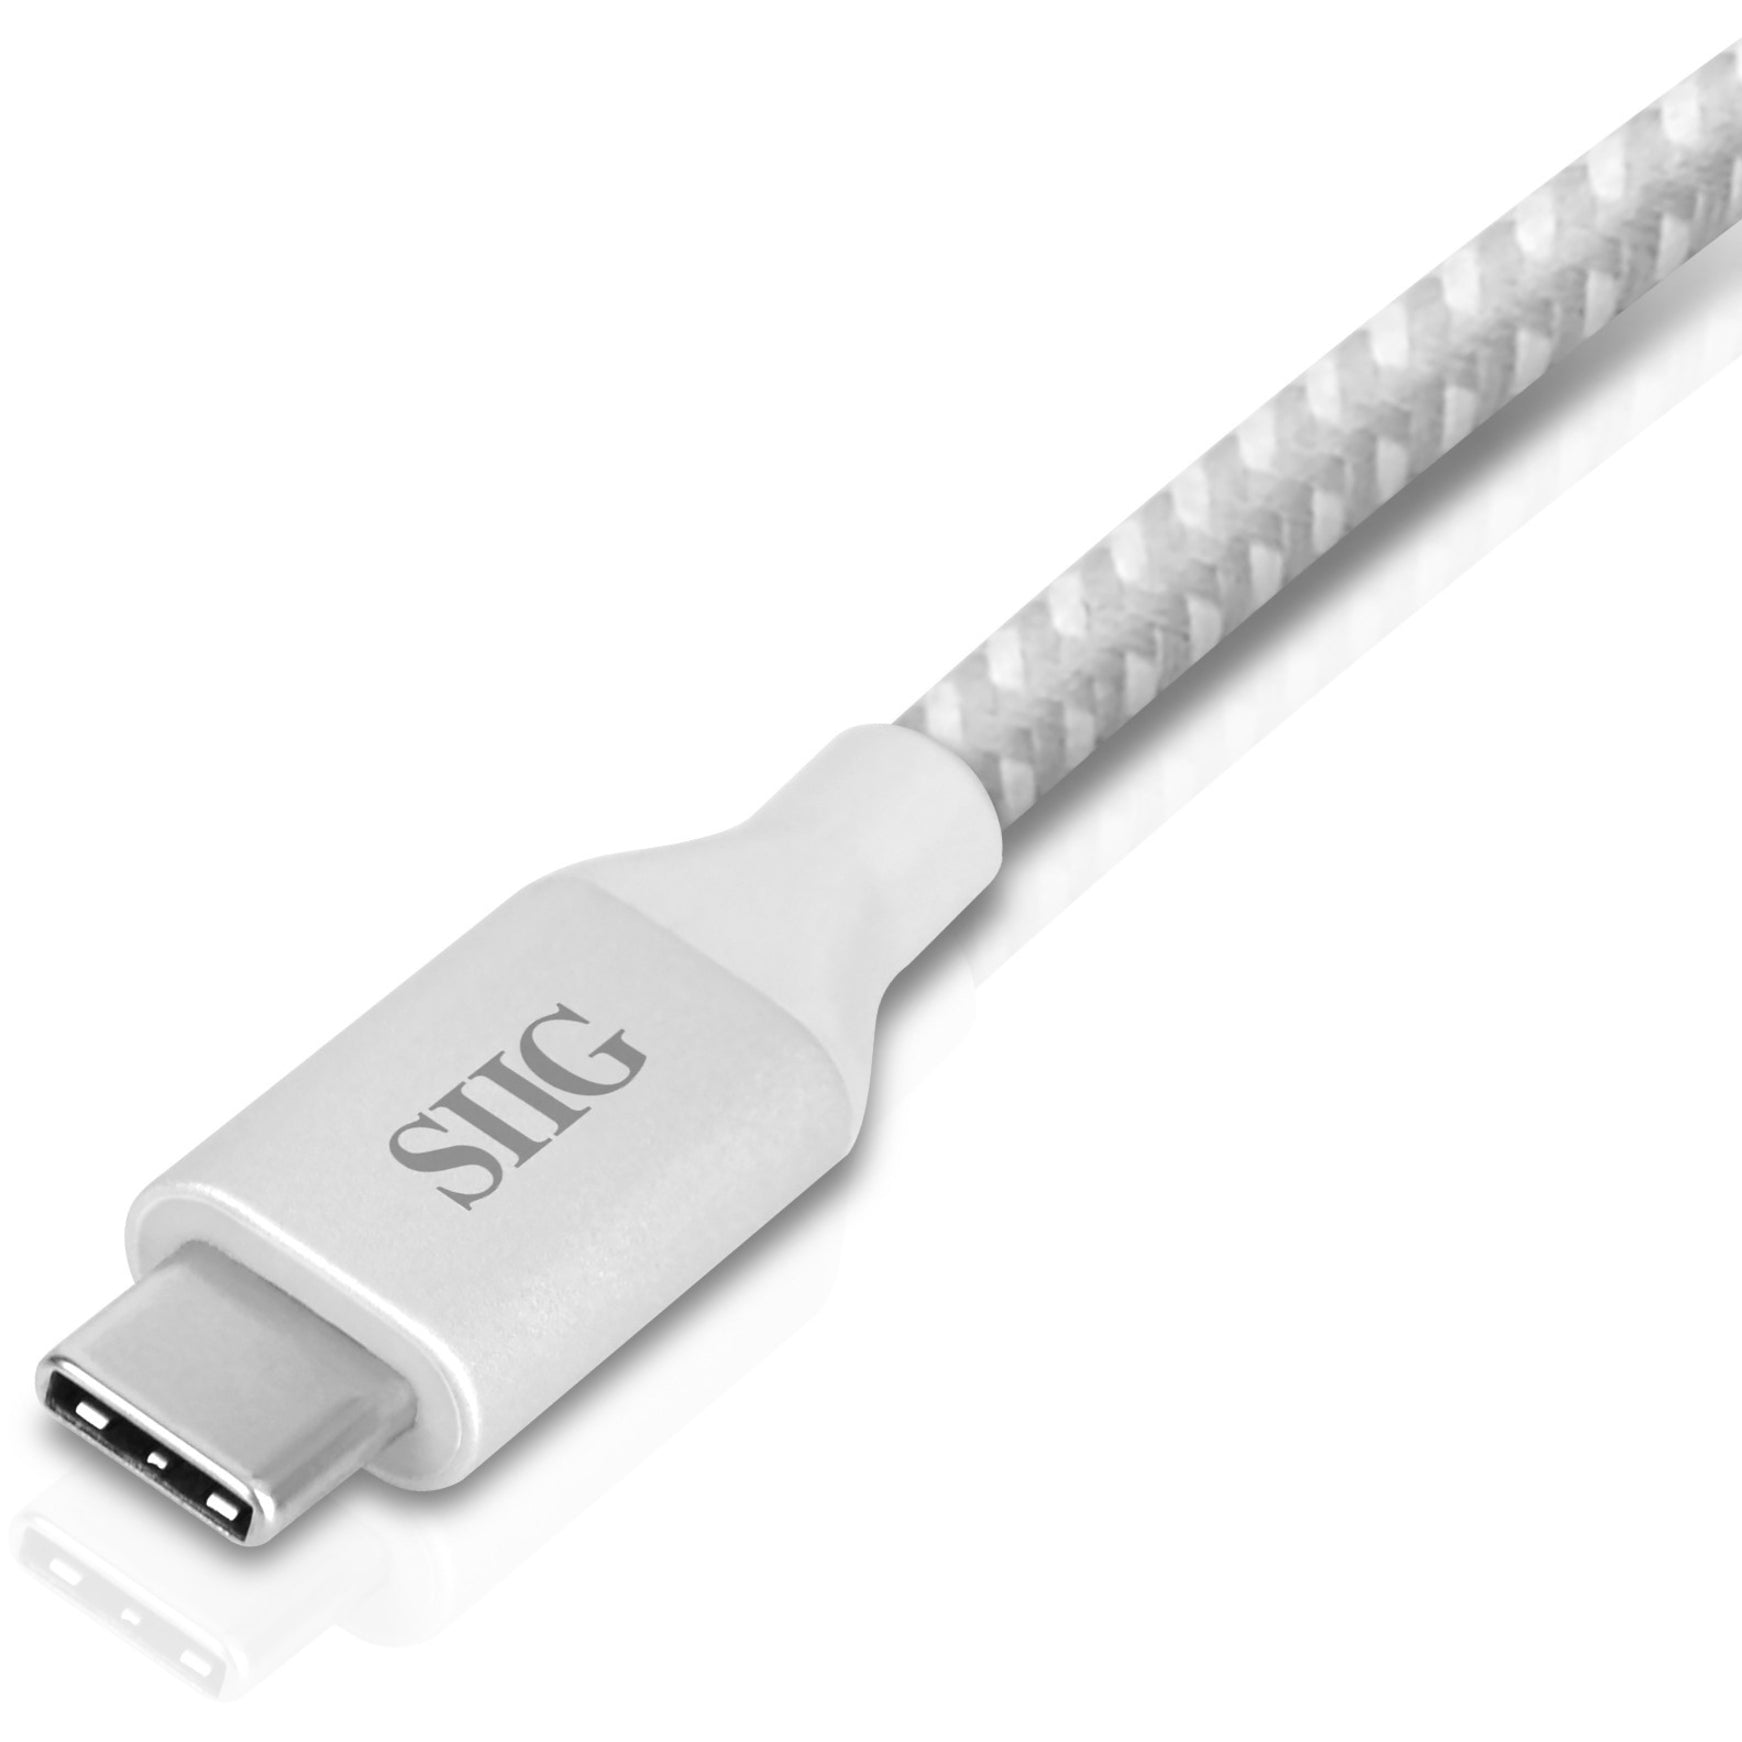 SIIG JU-H30C11-S1 USB-C to 4-Port USB 3.0 Hub with PD Charging - Aumenta le opzioni di connettività